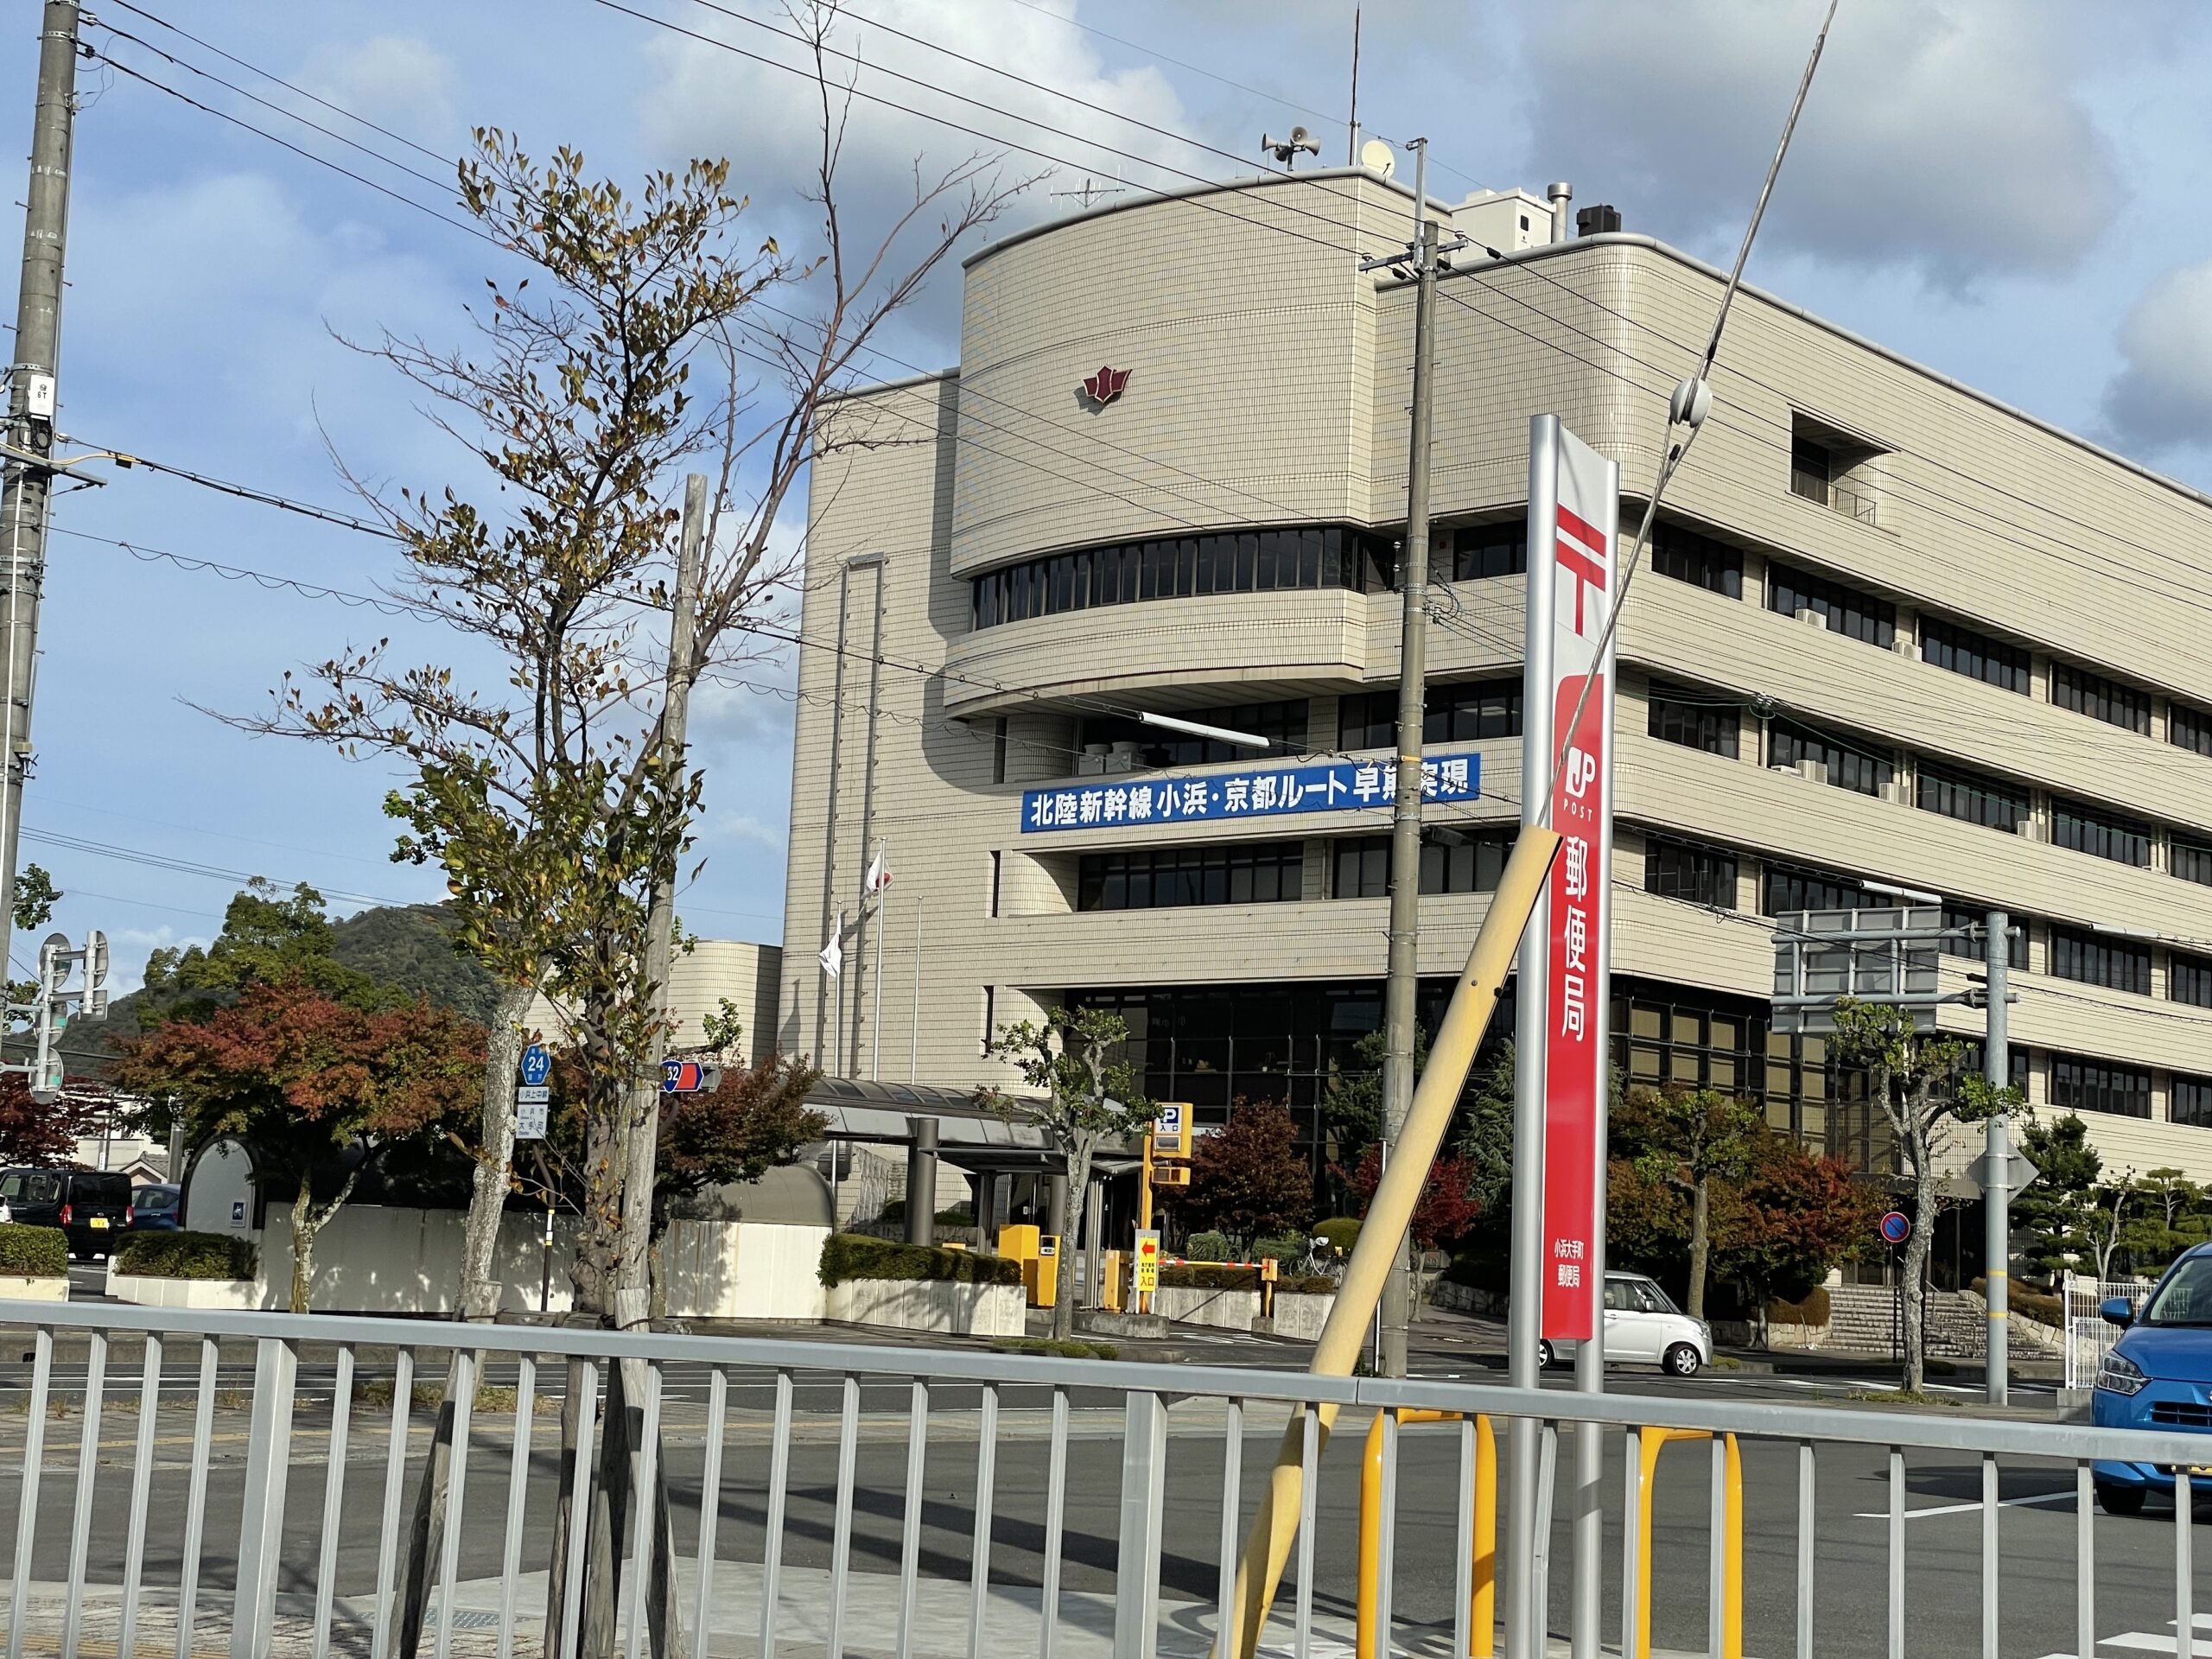 Rathaus von Obama - mit einem Transparent, dass den schnellen Bau der Shinkansentrasse fordert